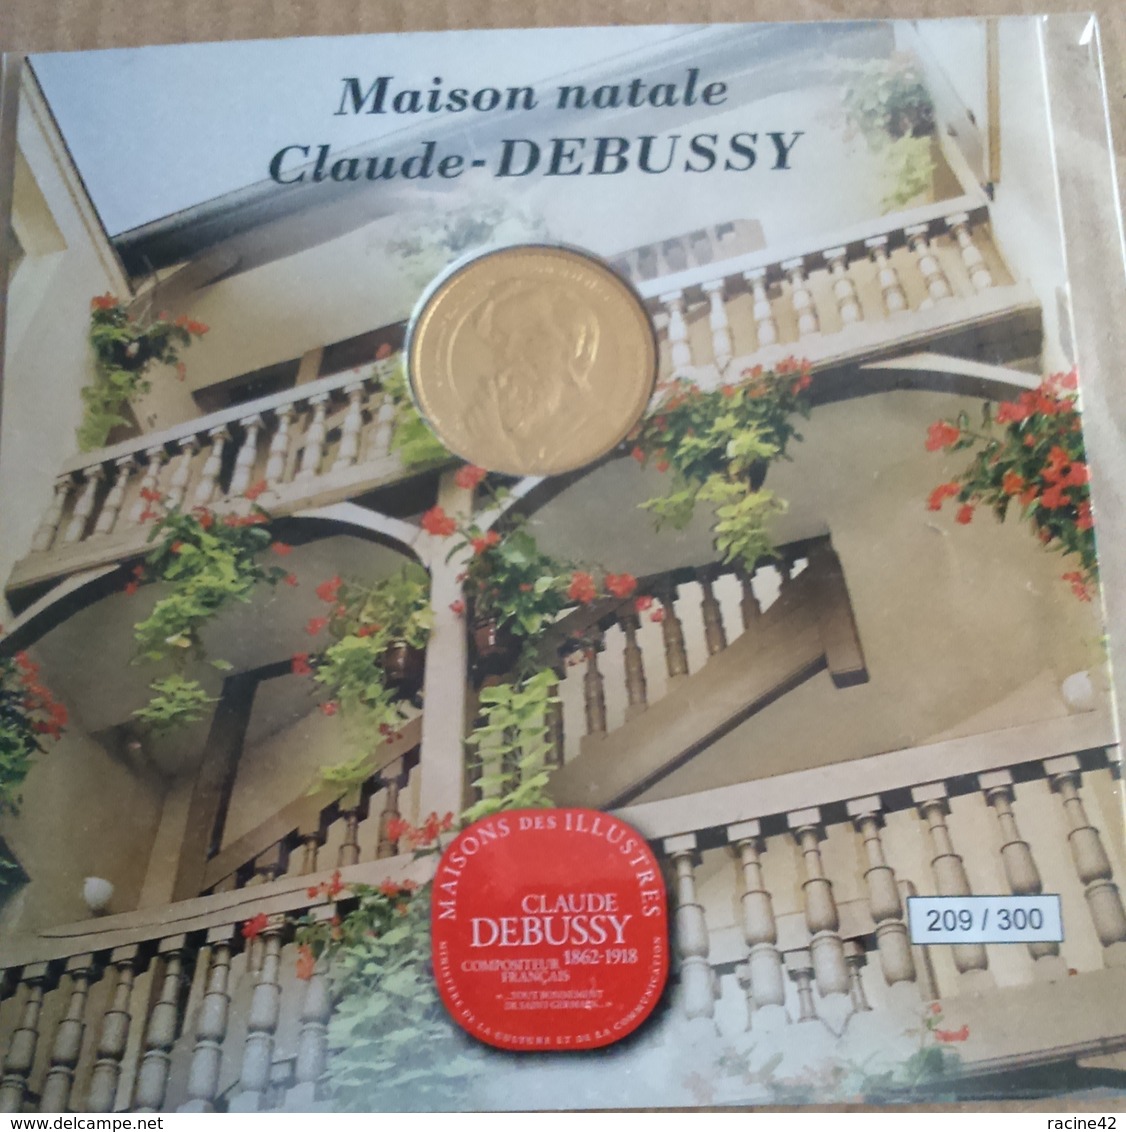 JETON TOURISTIQUE ENCART N°209/300 - MAISON NATALE CLAUDE DEBUSSY - 2014